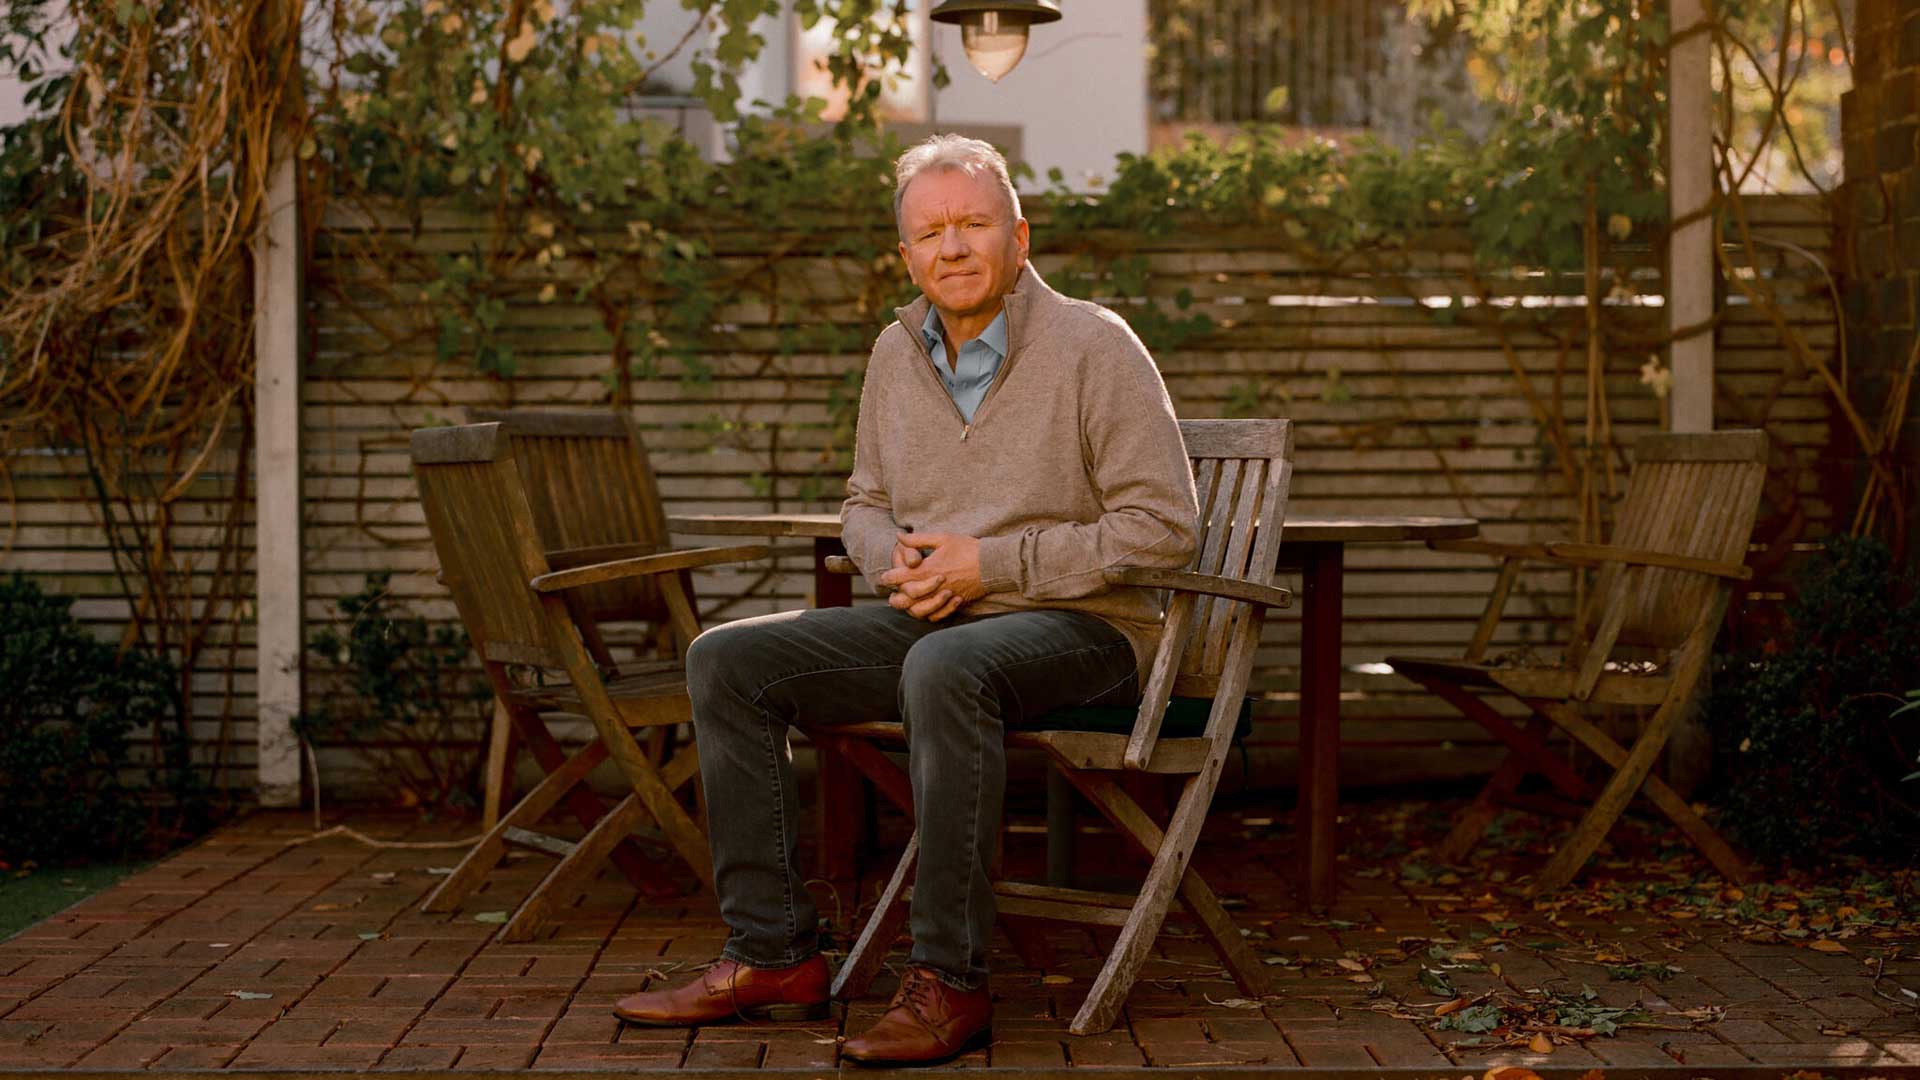 جیم رایان، مدیر برند پلی استیشن شرکت سونی نشسته روی صندلی در فضای آرام حیاط